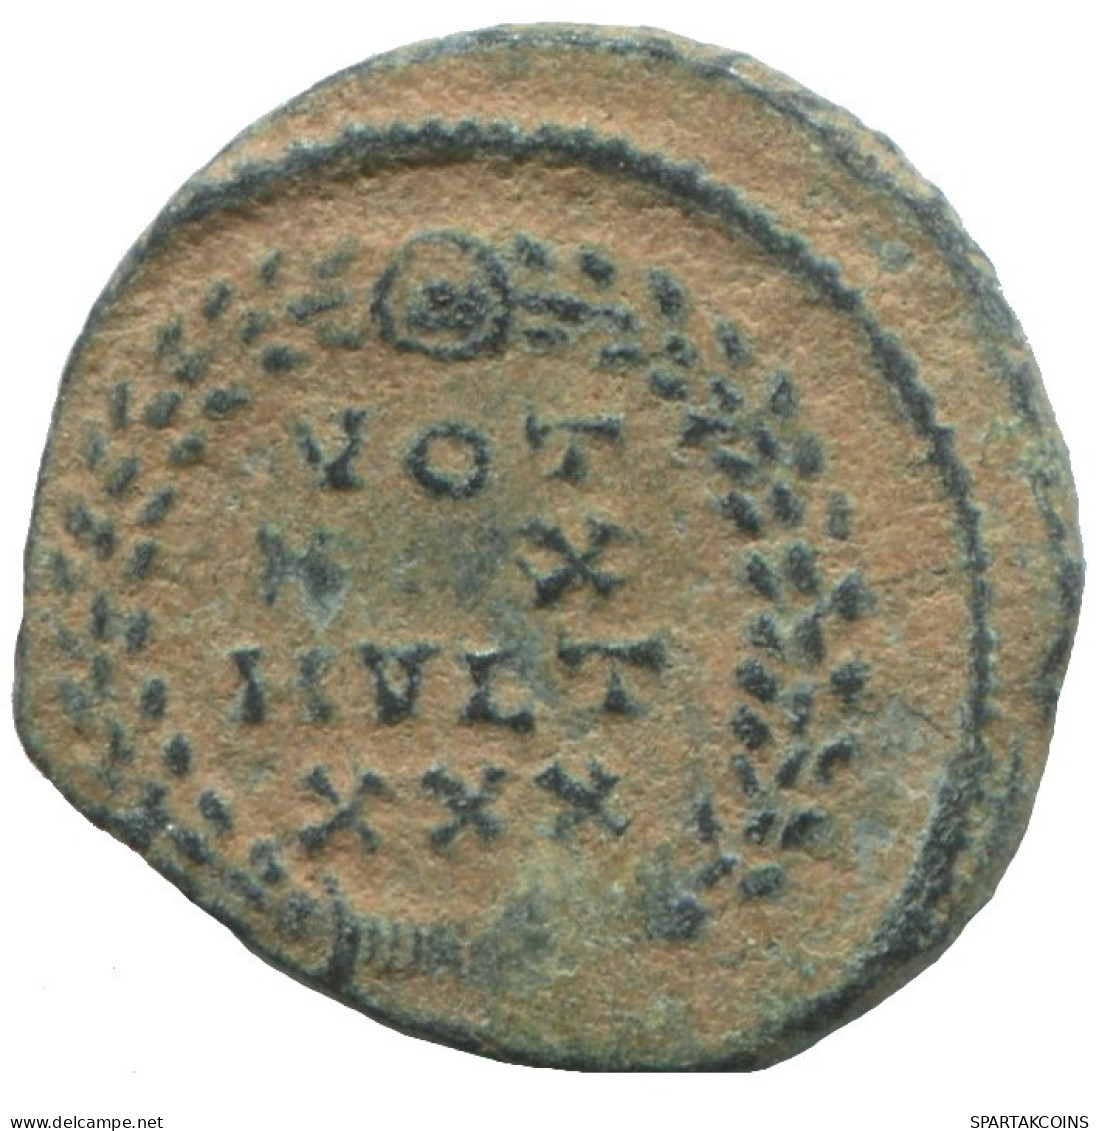 CONSTANS AD333-337 VOT XX MVLT XXX 1.6g/16mm ROMAN EMPIRE Coin #ANN1313.9.U.A - El Impero Christiano (307 / 363)